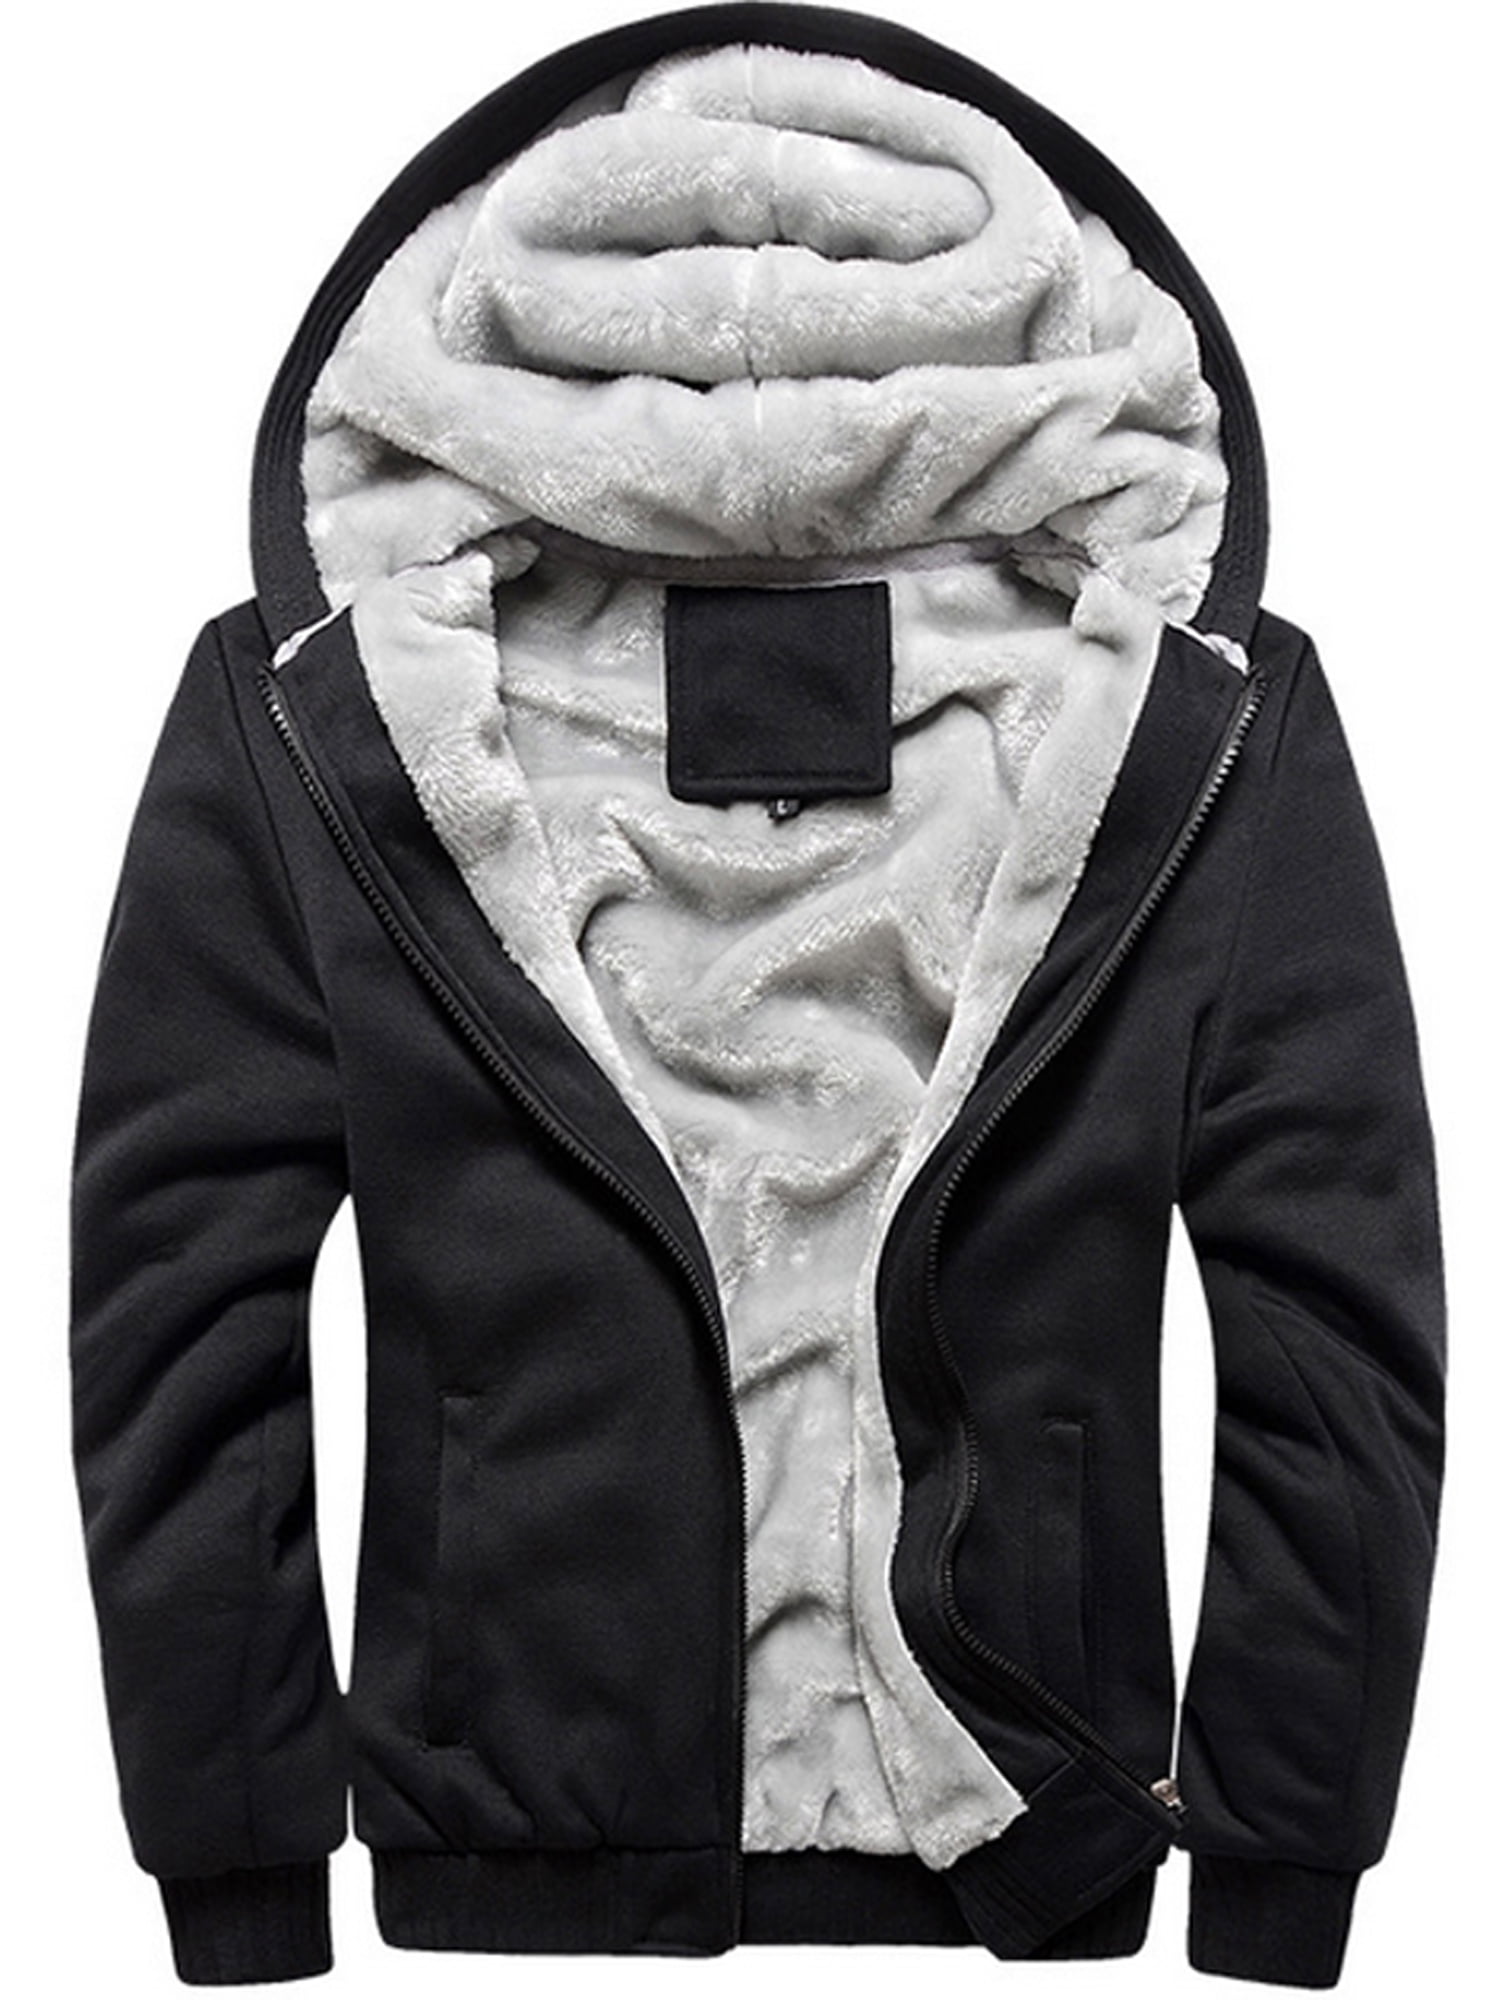 Hot Men's Winter Camo Military Jackets Thick Velvet Hooded Zip Coat Hoodies Size 